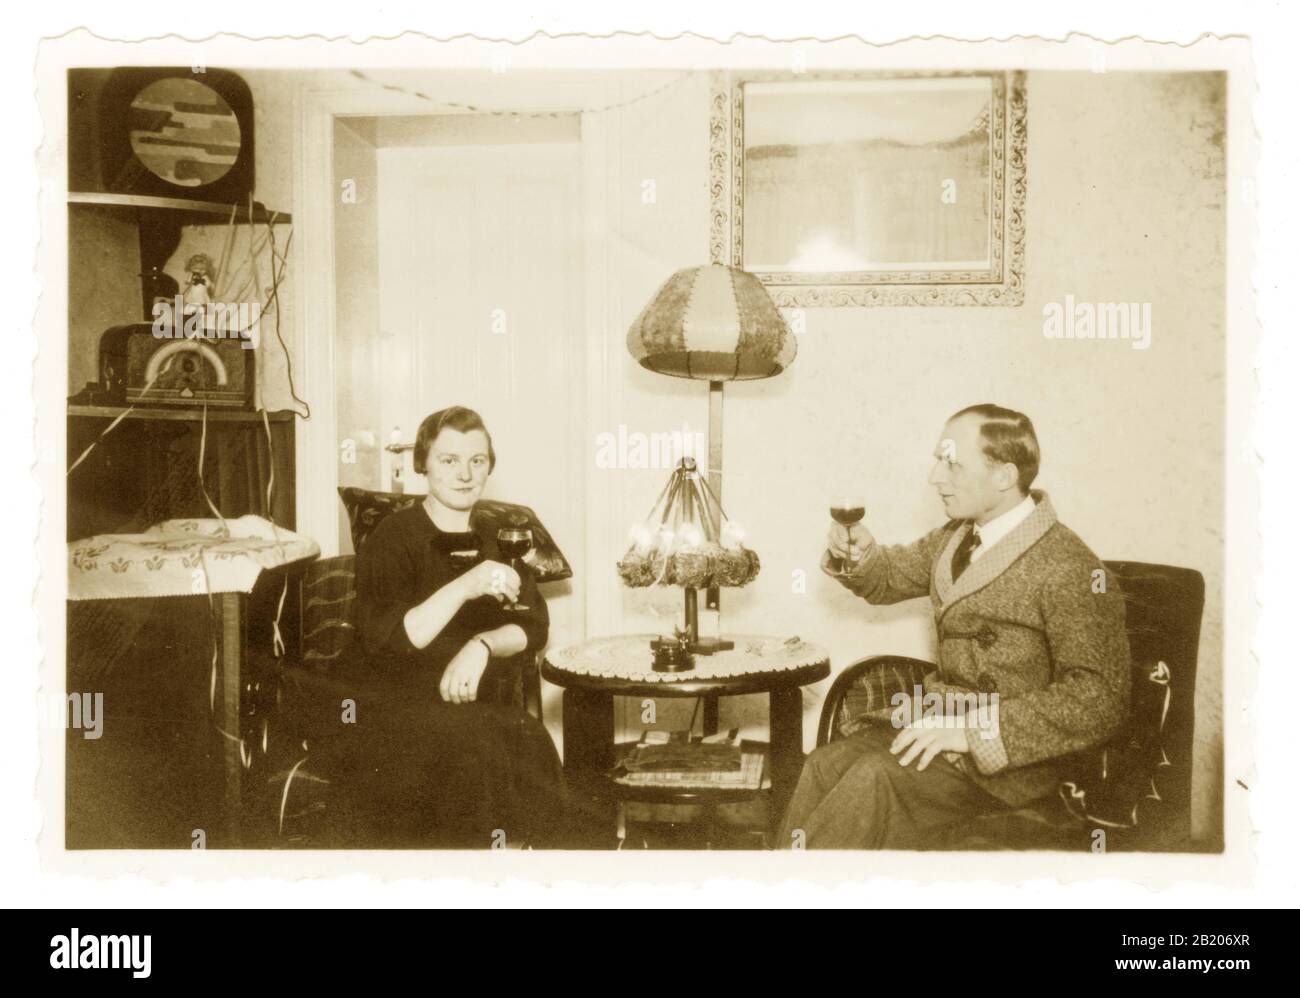 Anfang des 19. Jahrhunderts fotografierte ein Paar, das Weihnachten mit einem Getränk entspannen, Radio hören, Radio und Lautsprecher sind im Art-déco-Stil, überall Kabel, interessante Inneneinrichtung um die 1930er Jahre in den 1920er Jahren - unbekannte europäische Lage. Stockfoto